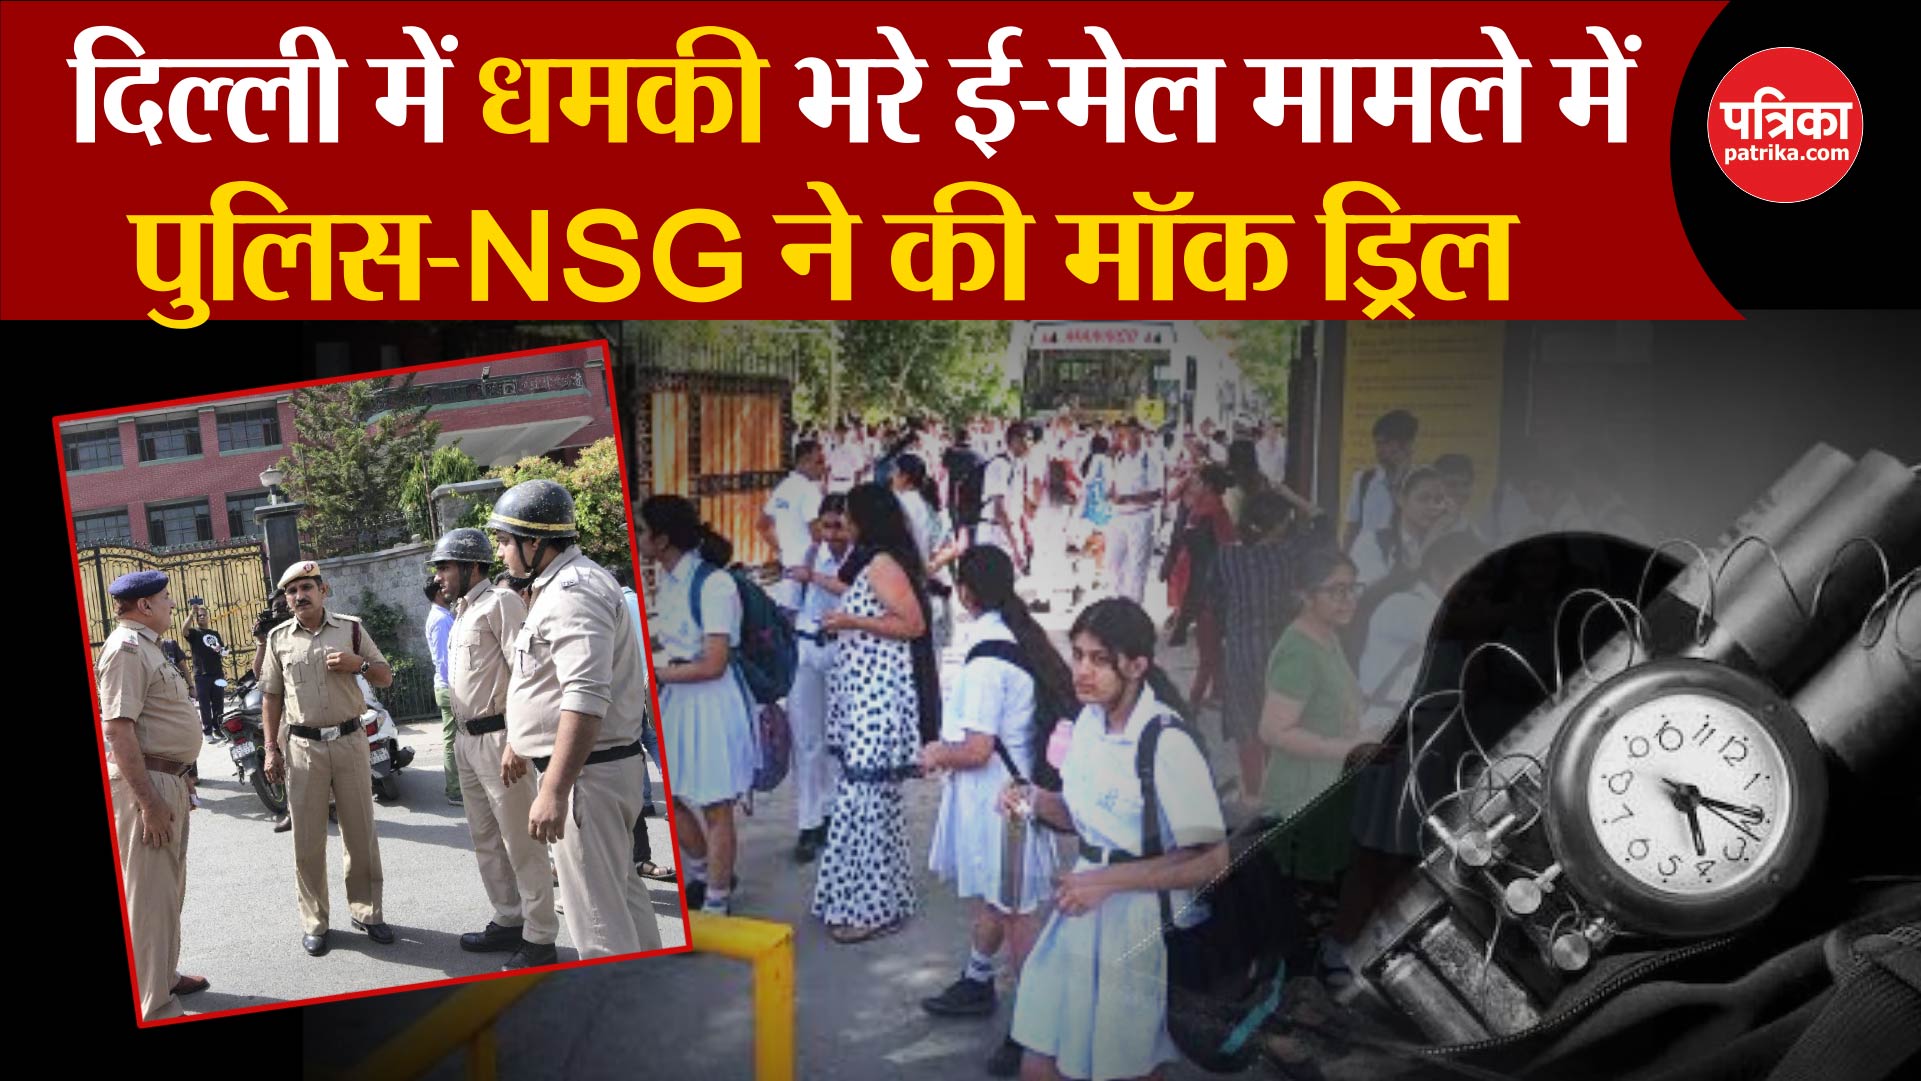 दिल्ली में धमकी भरे ई-मेल मामले में Delhi Police-NSG ने की मॉक ड्रिल